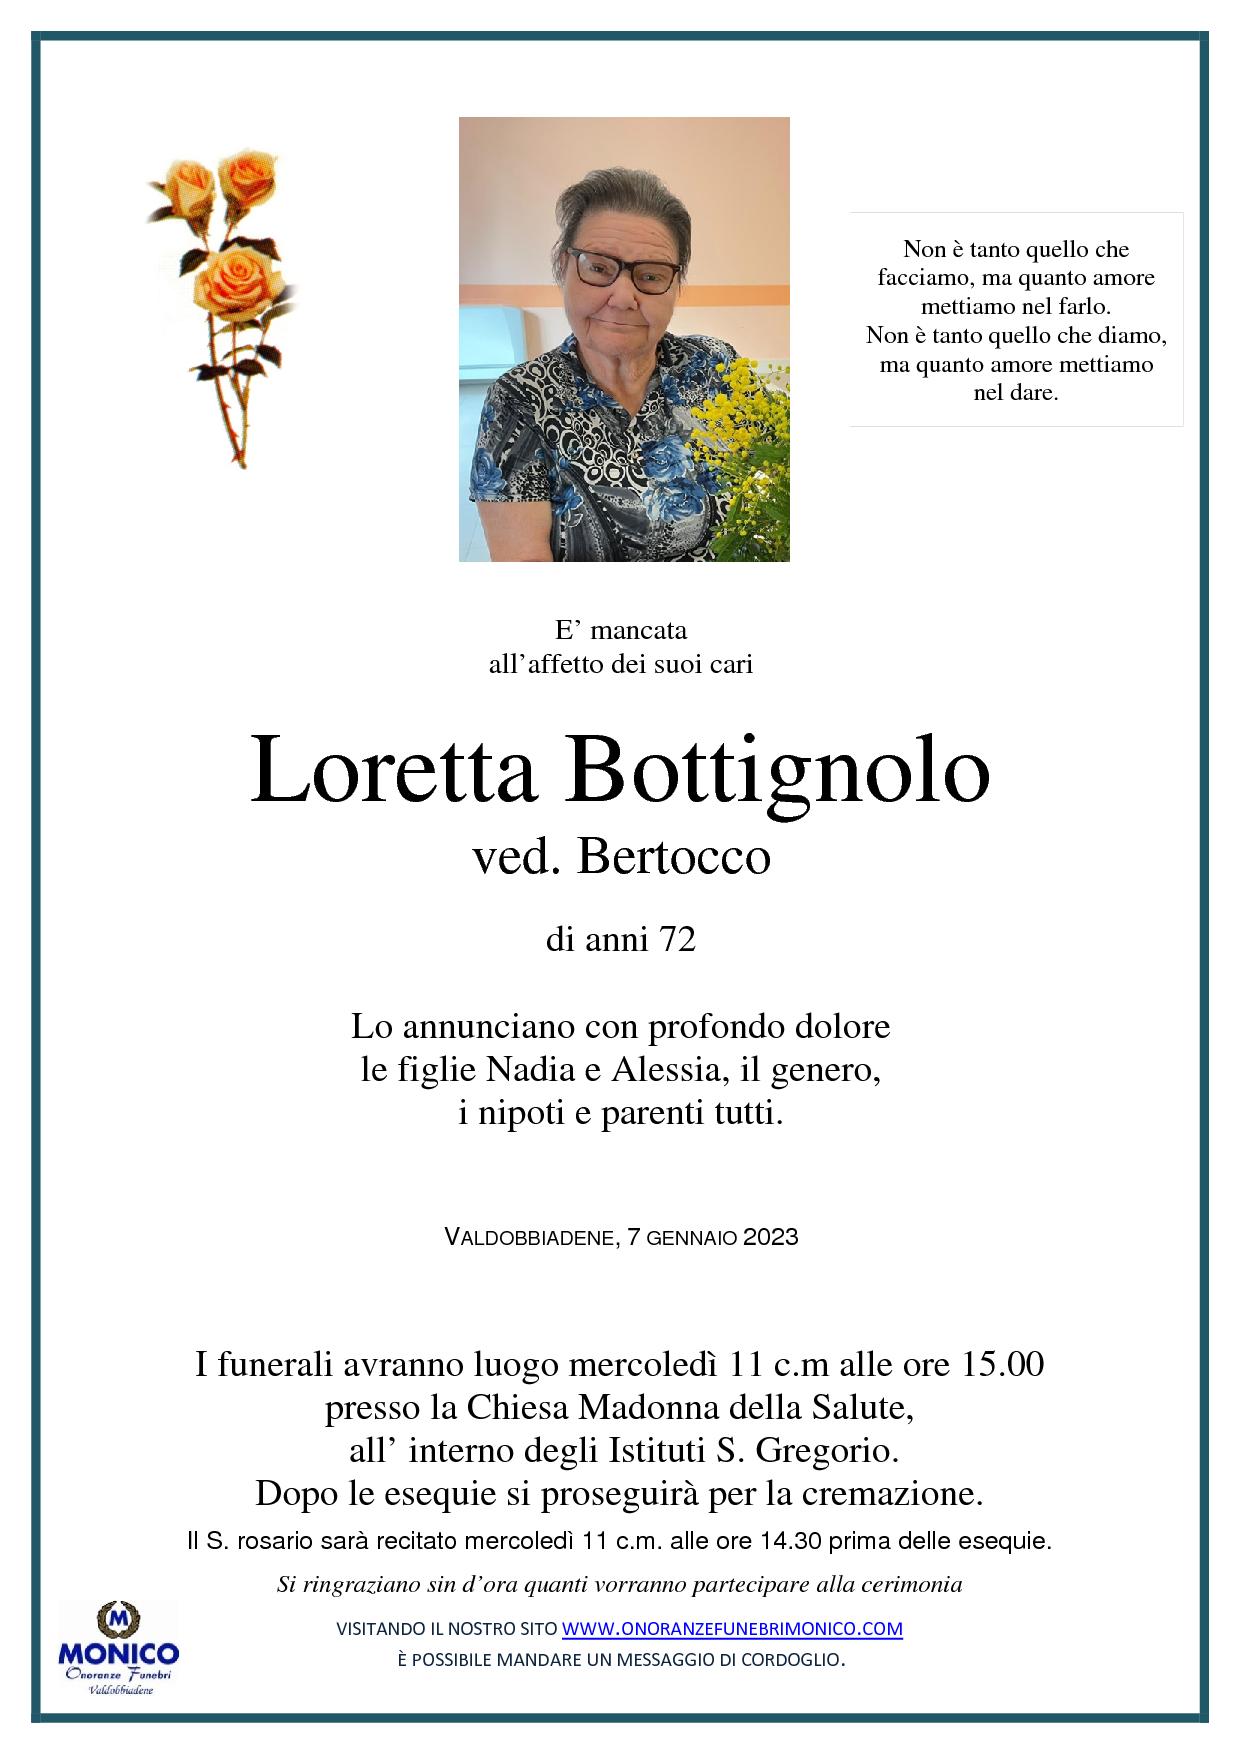 Bottignolo Loretta